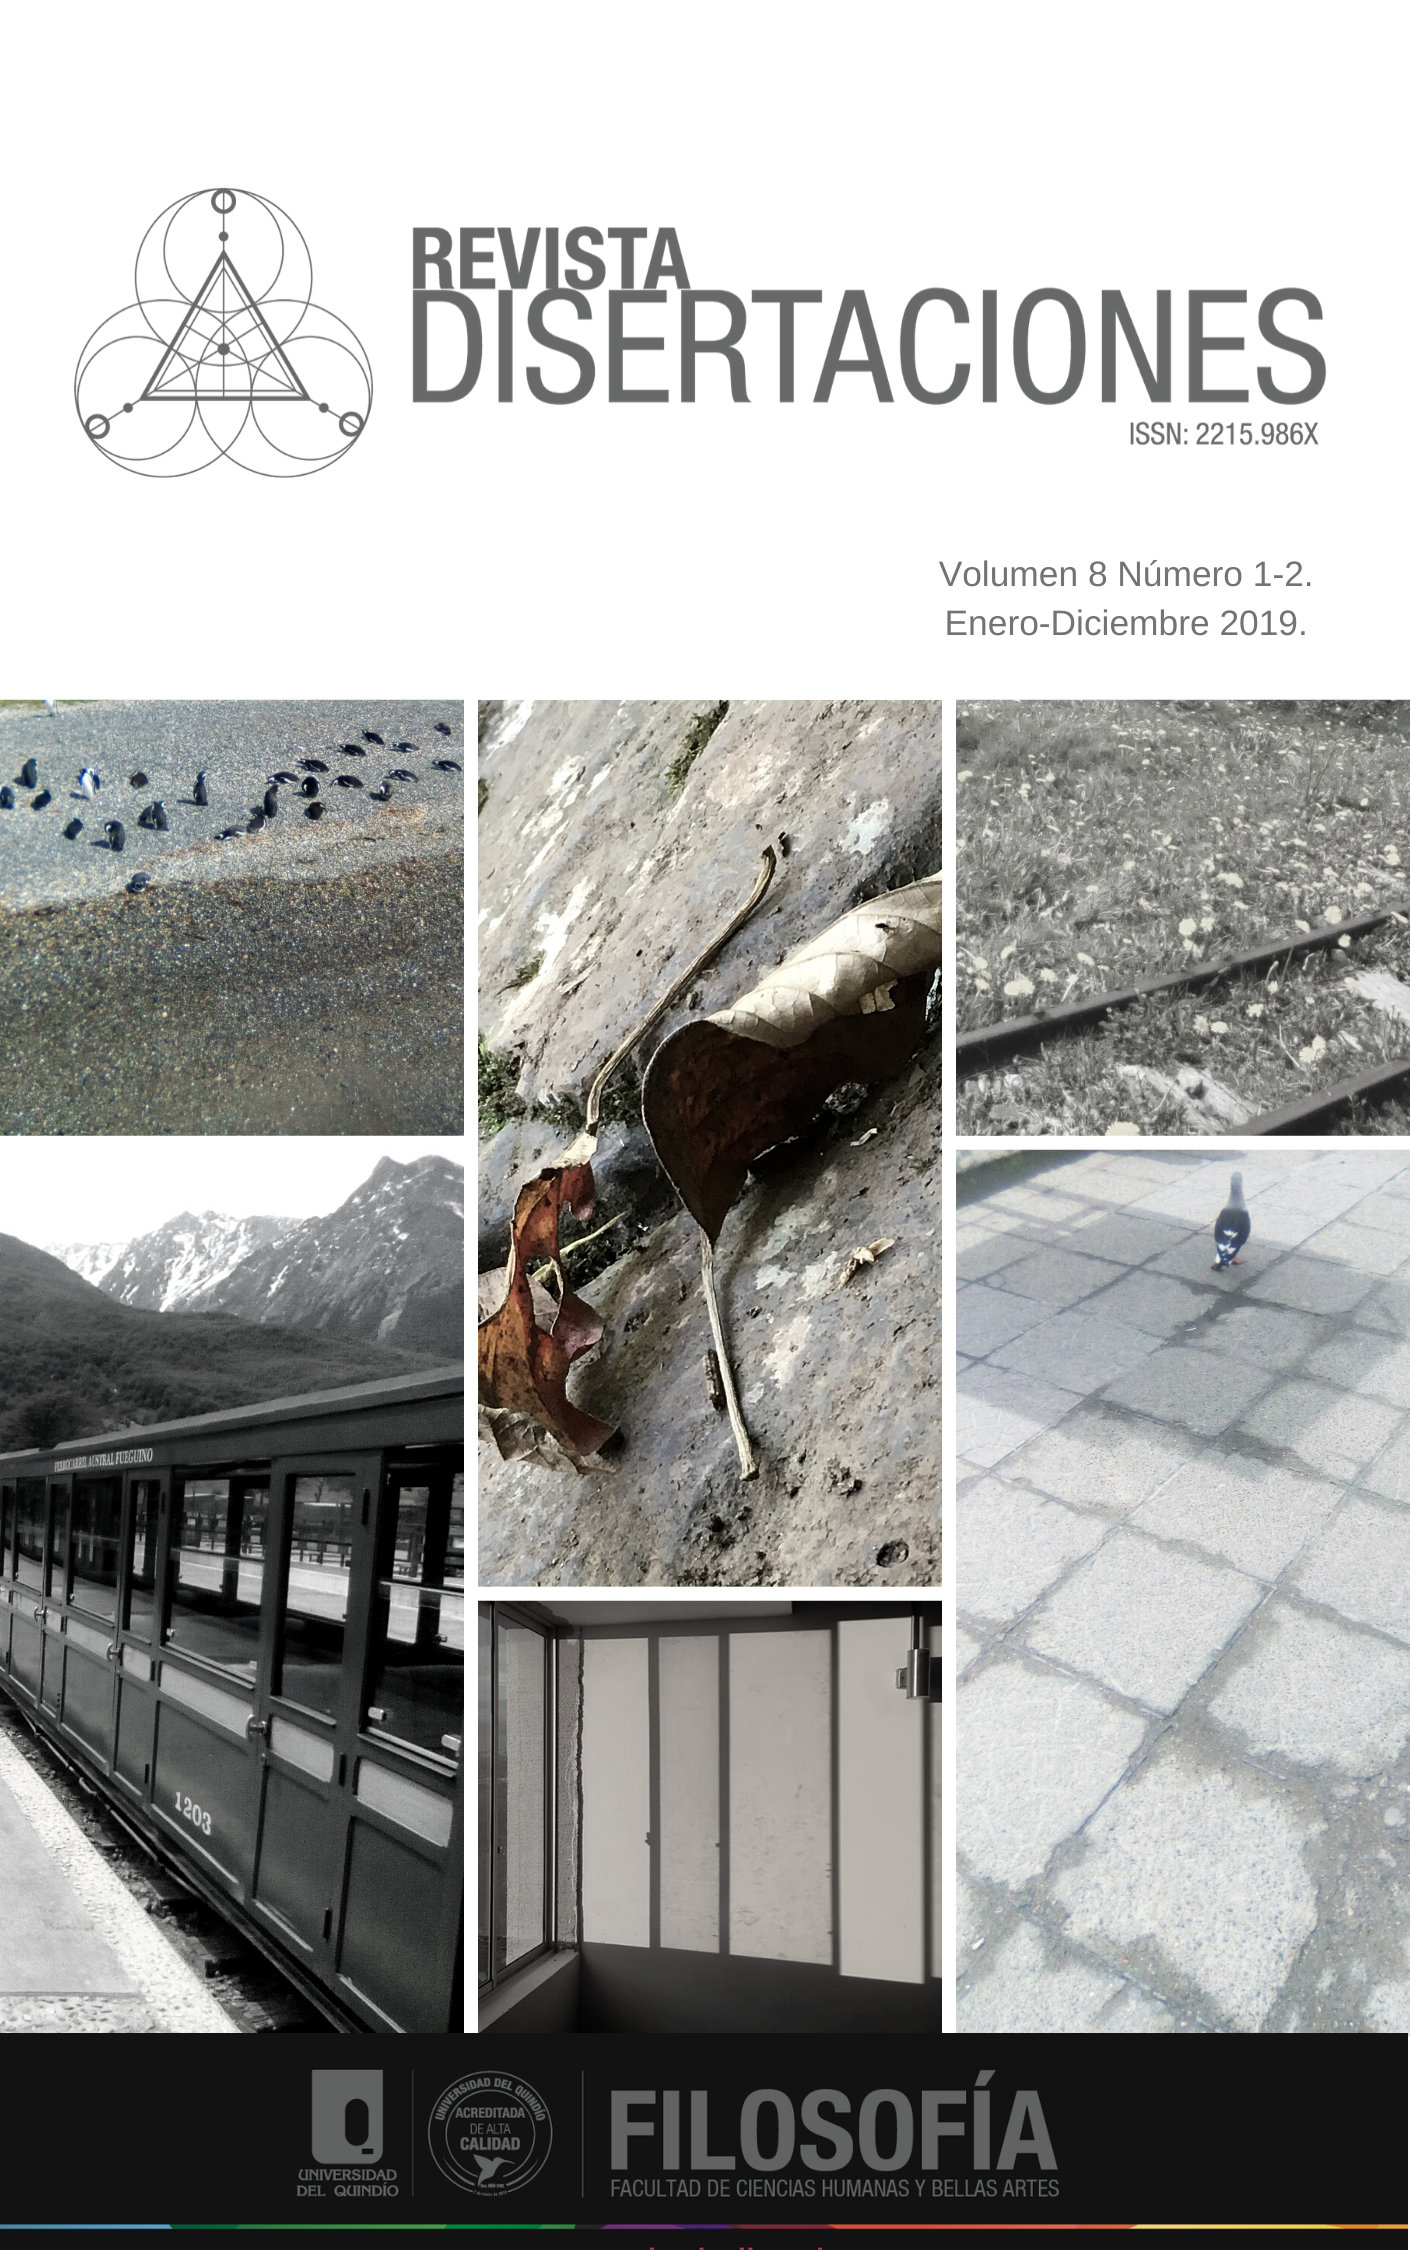 					Visualizar v. 8 n. 1-2 (2019): Revista Disertaciones
				